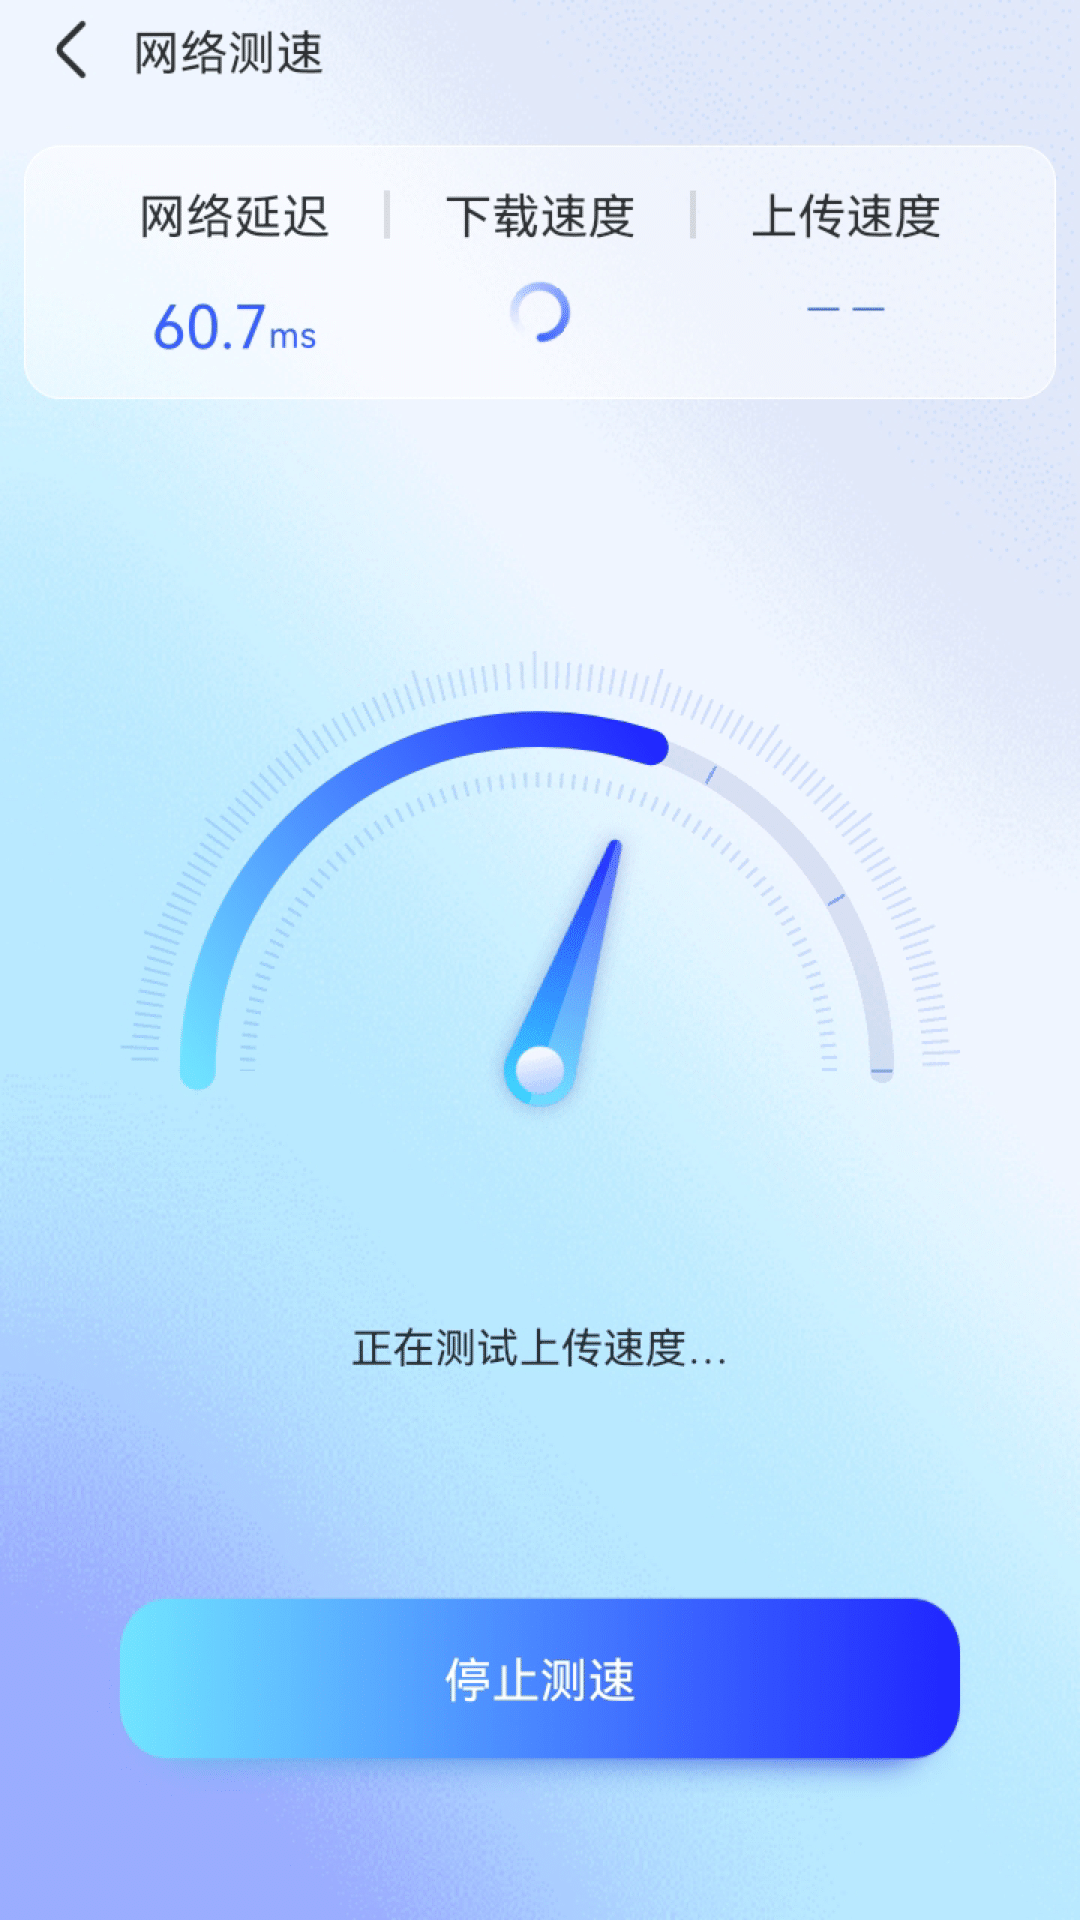 智能WiFi秘书重庆知名app开发公司